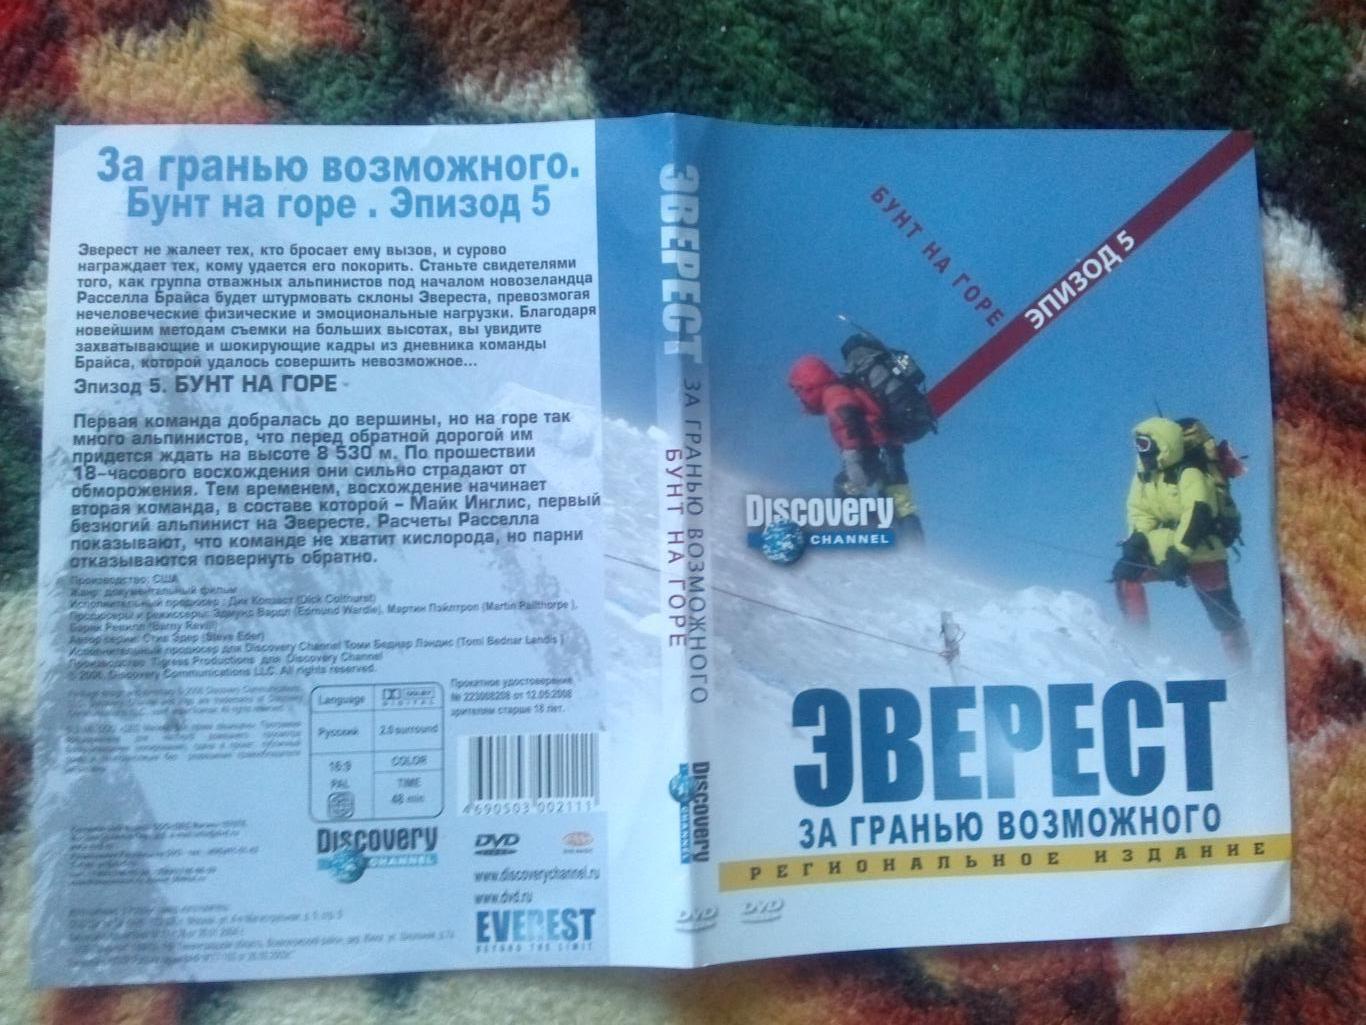 DVD Discovery Эверест - за гранью возможного. Альпинизм (Документальный фильм) 2